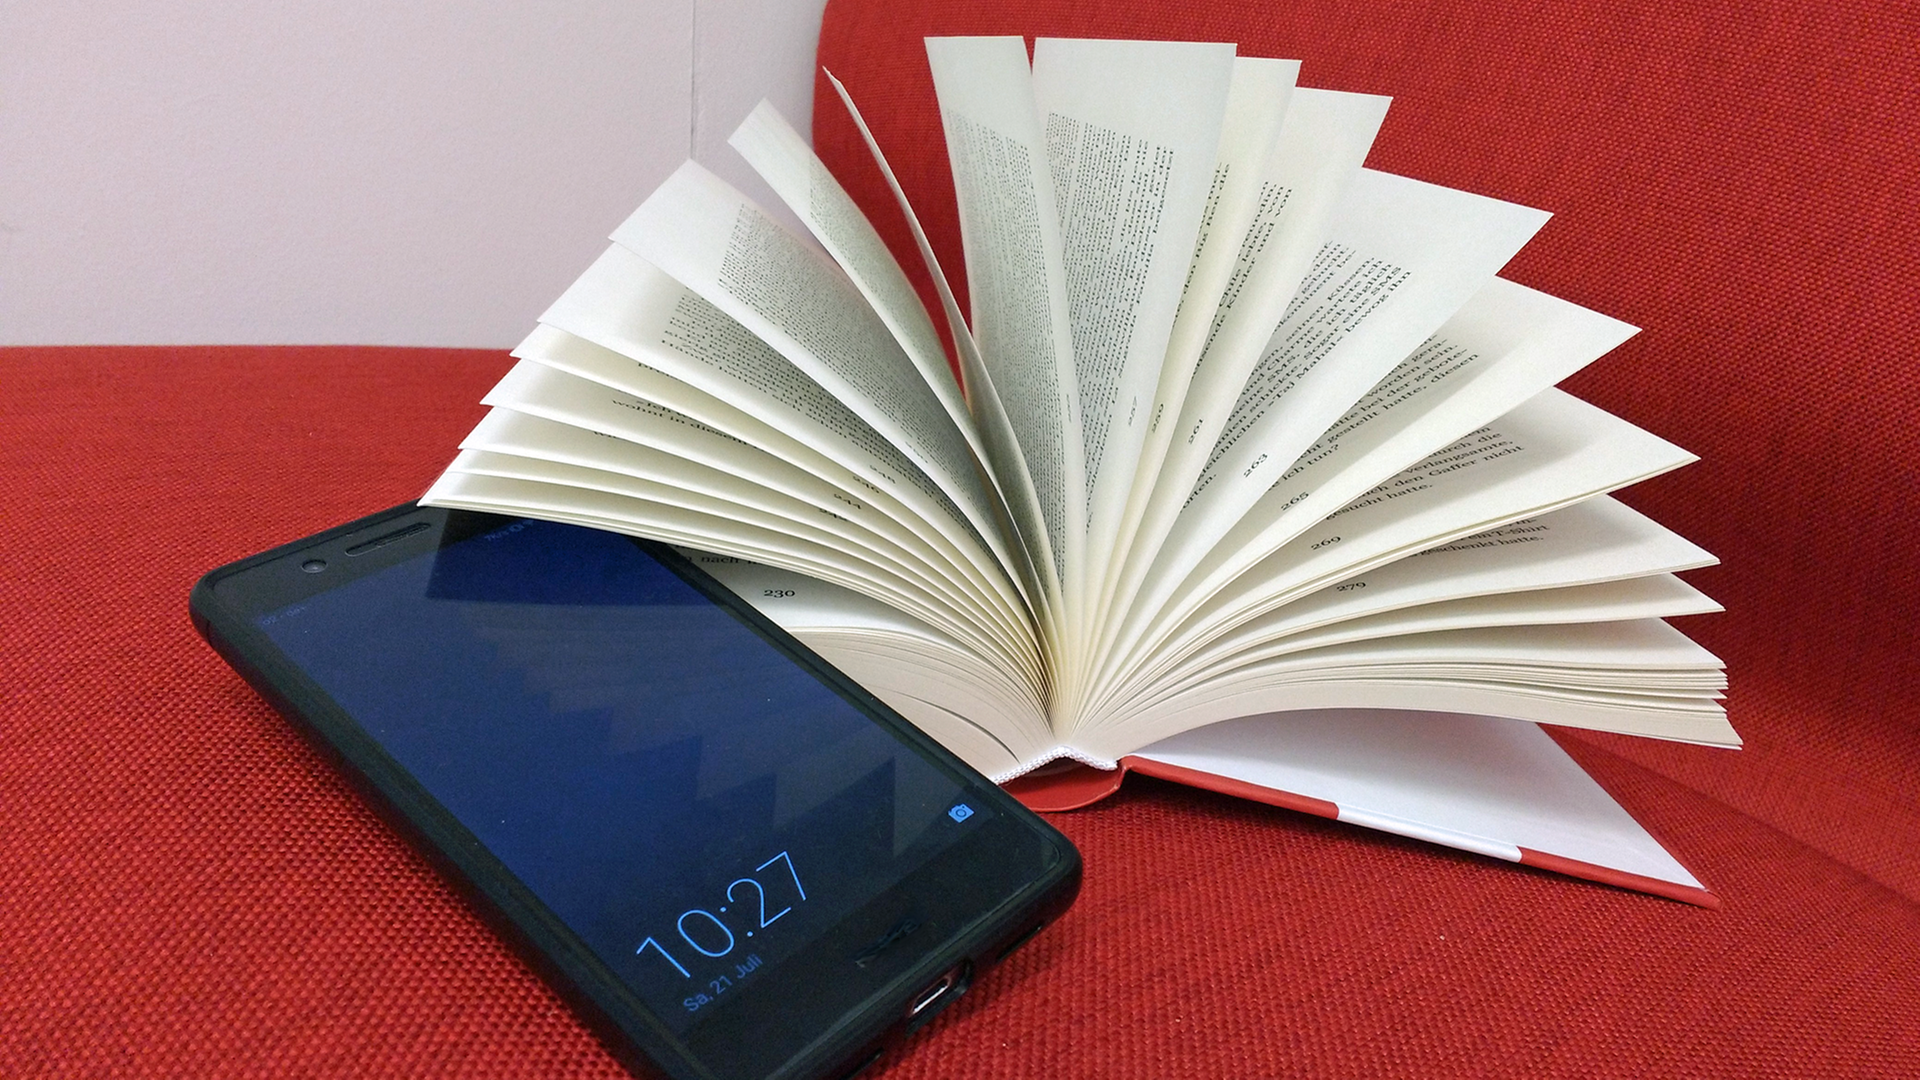 Ein Smartphone liegt neben einem aufgeschlagenen Buch